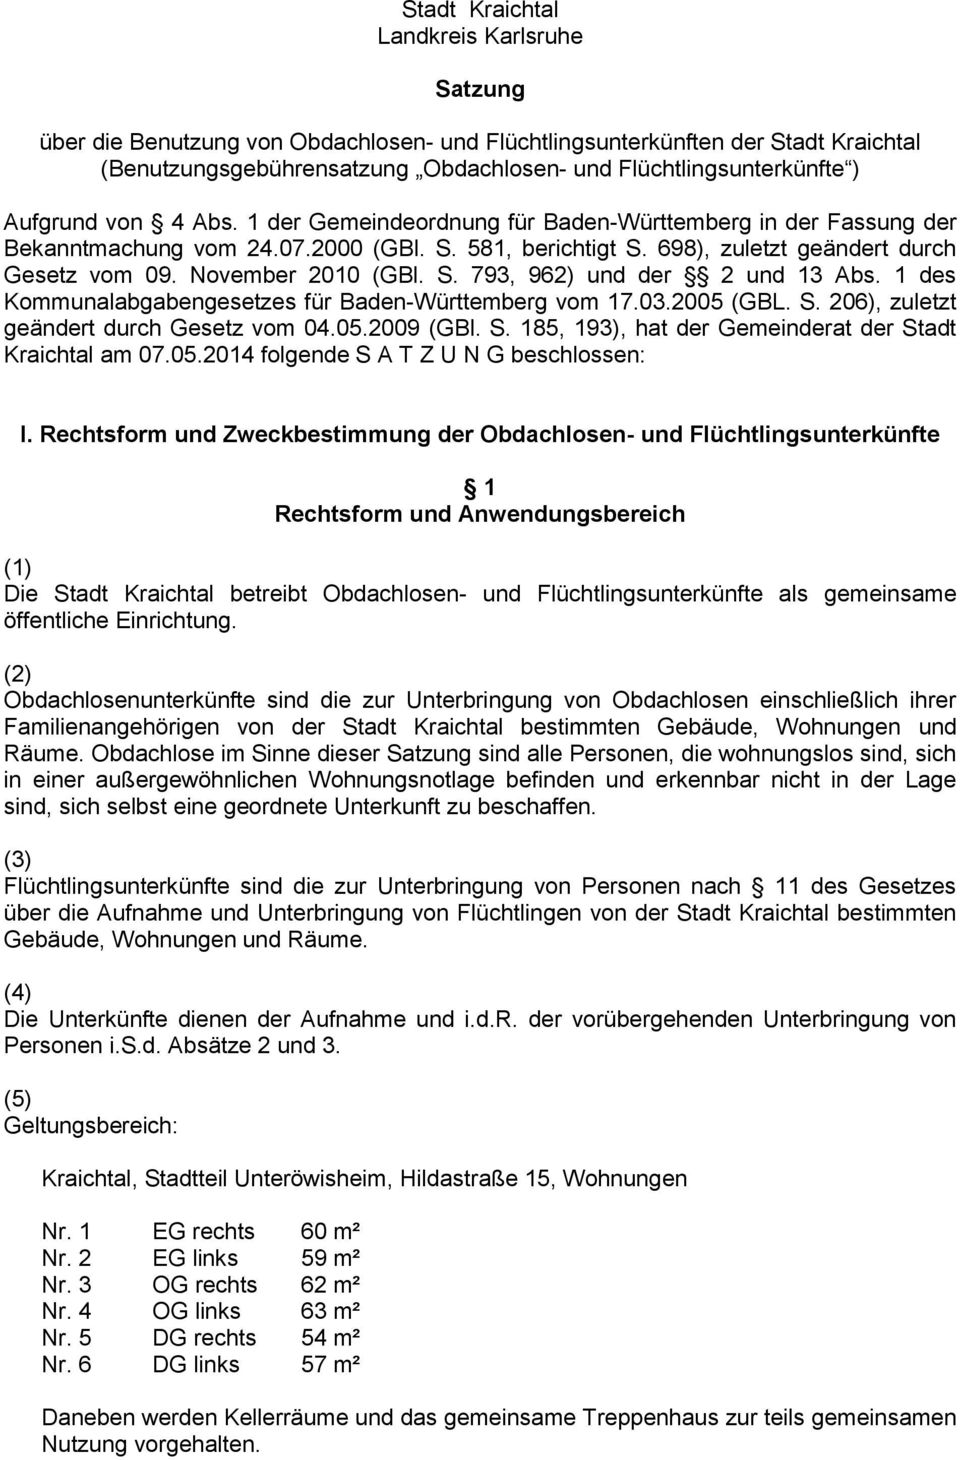 November 2010 (GBl. S. 793, 962) und der 2 und 13 Abs. 1 des Kommunalabgabengesetzes für Baden-Württemberg vom 17.03.2005 (GBL. S. 206), zuletzt geändert durch Gesetz vom 04.05.2009 (GBl. S. 185, 193), hat der Gemeinderat der Stadt Kraichtal am 07.